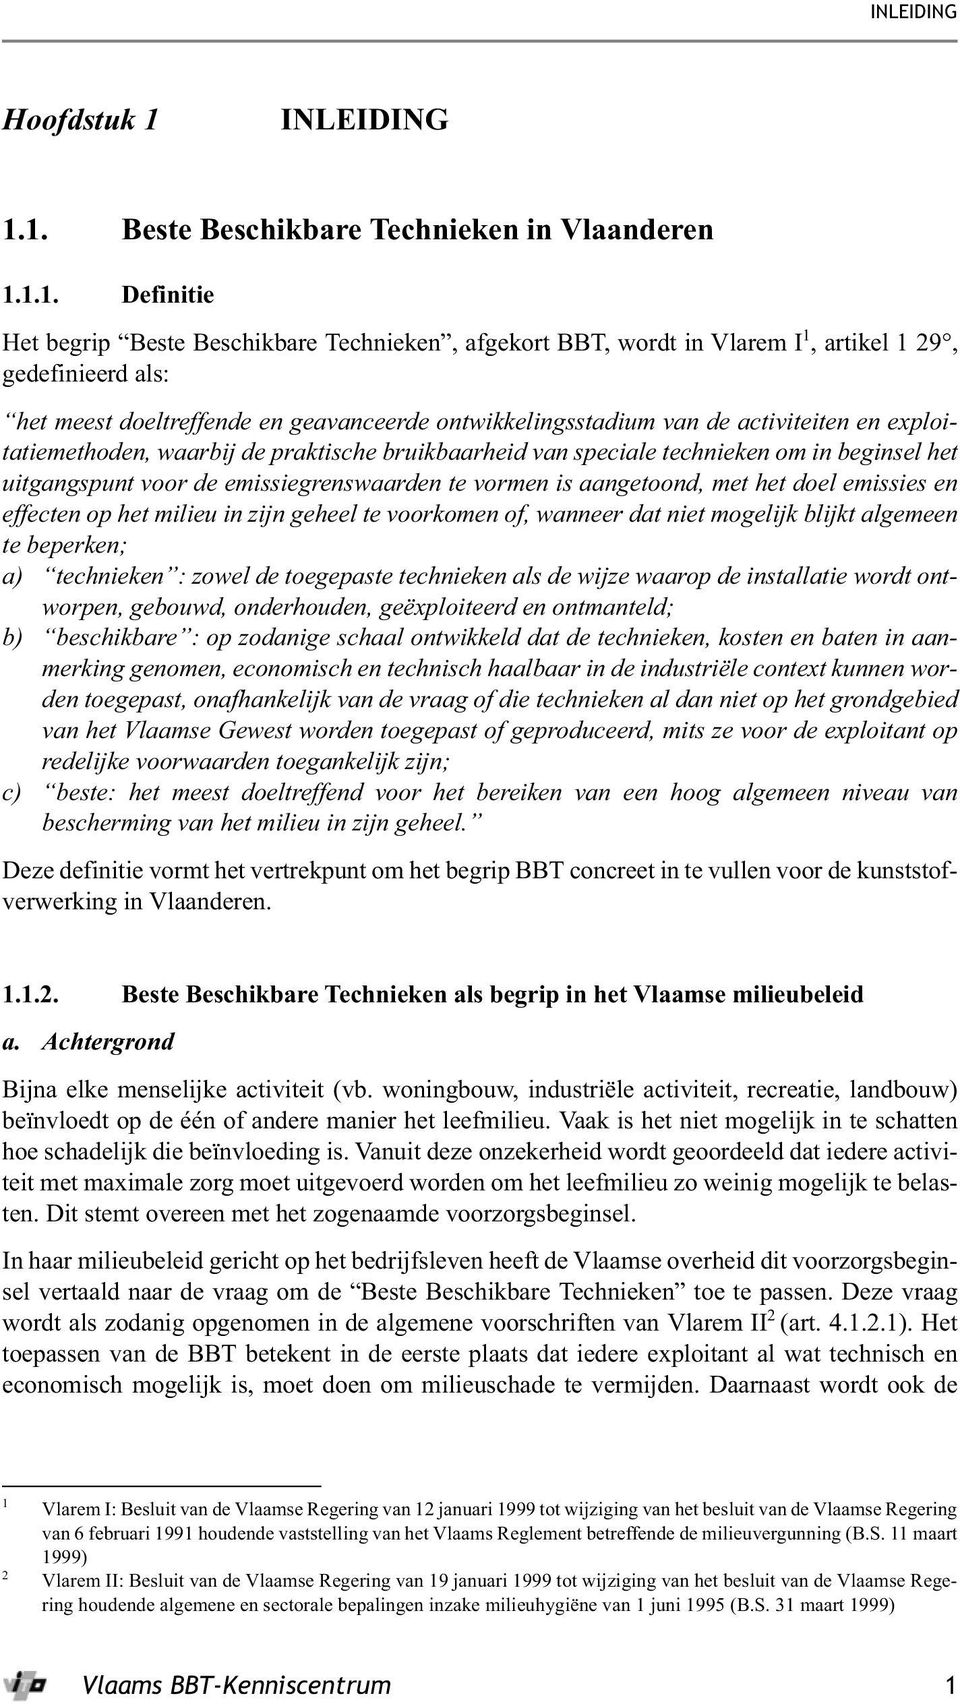 1. Beste Beschikbare Technieken in Vlaanderen 1.1.1. Definitie Het begrip Beste Beschikbare Technieken, afgekort BBT, wordt in Vlarem I 1, artikel 1 29, gedefinieerd als: het meest doeltreffende en